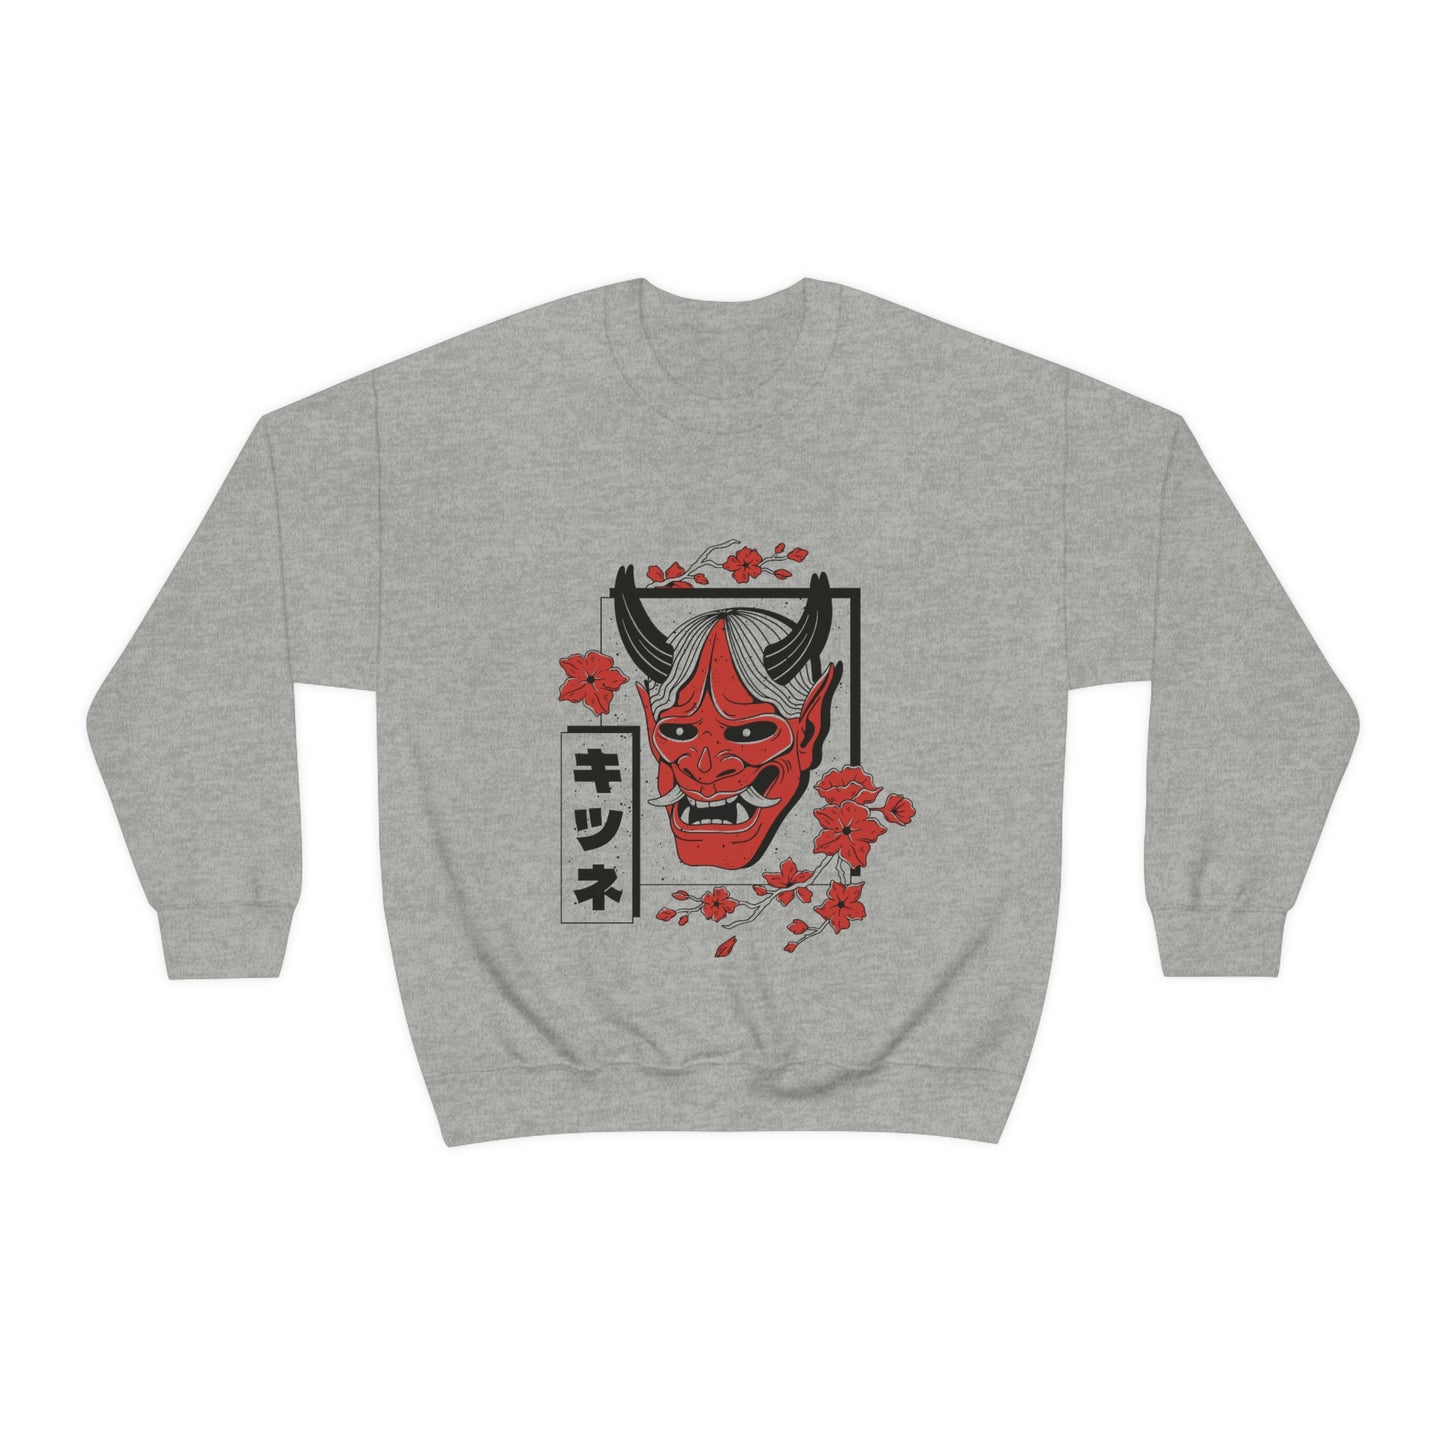 Indie Japanese Art, Japan Streeetwear Retro, Japanese Aesthetic Mask Sweatshirt